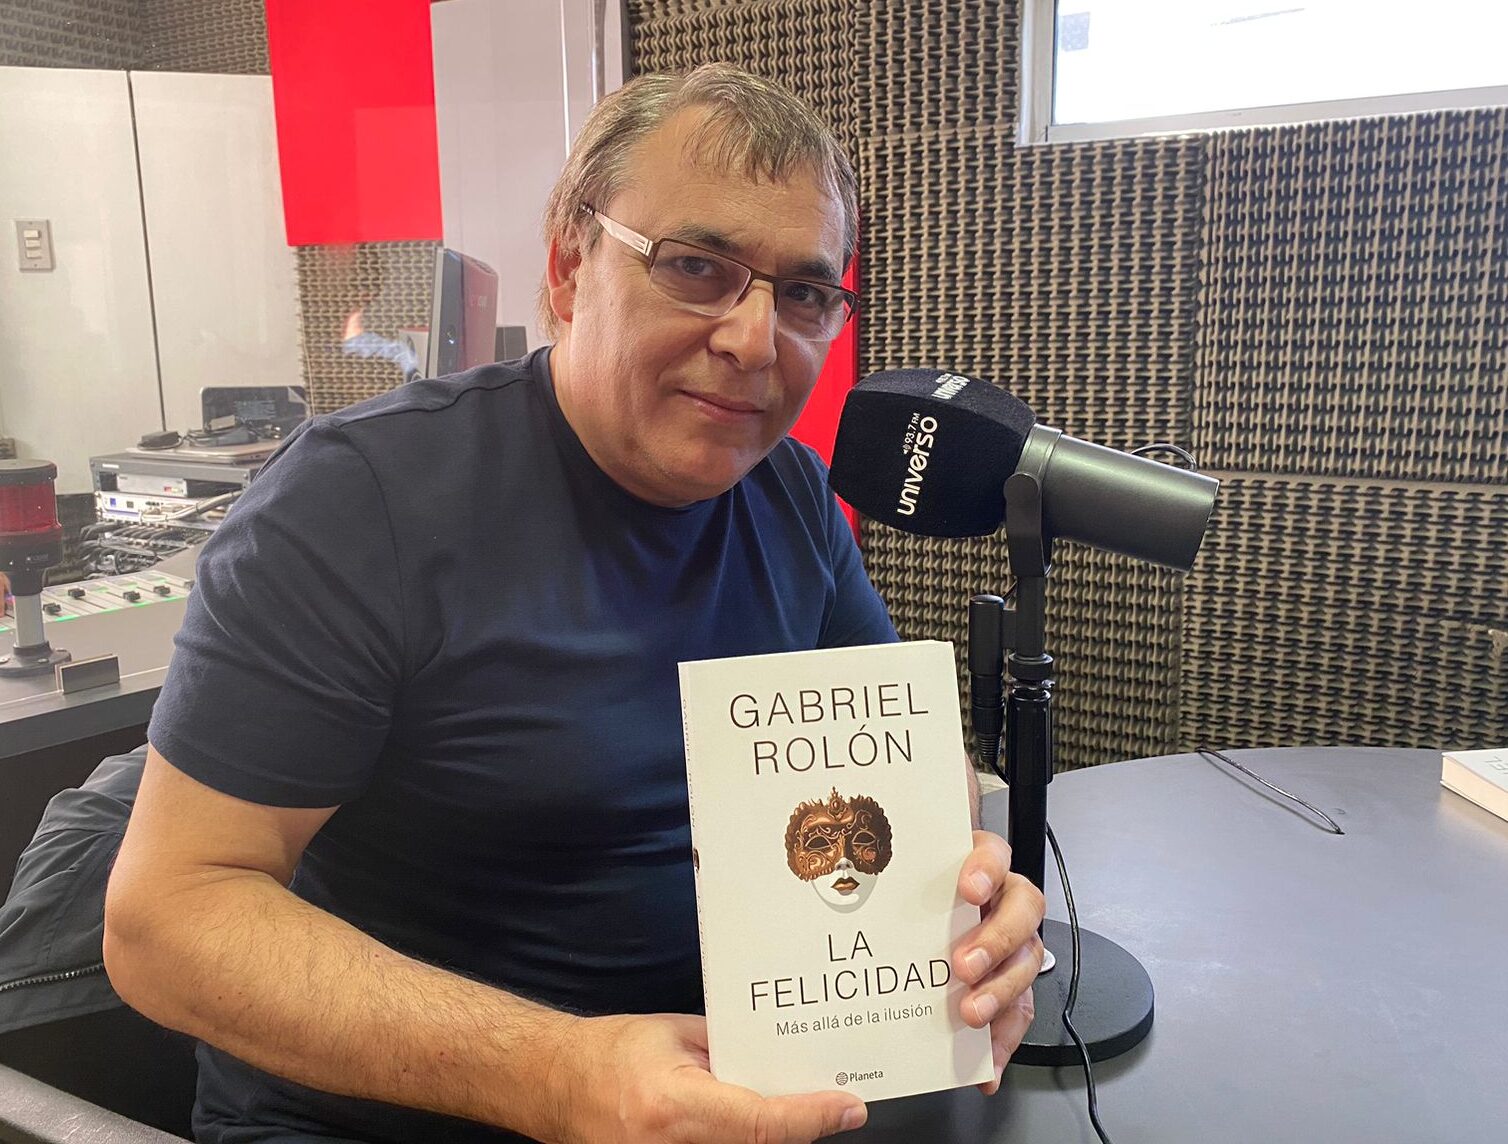 Gabriel Rolón, psicoanalista: “Uno tiene que intentar el reto de ser feliz en el lugar donde le ha tocado estar”